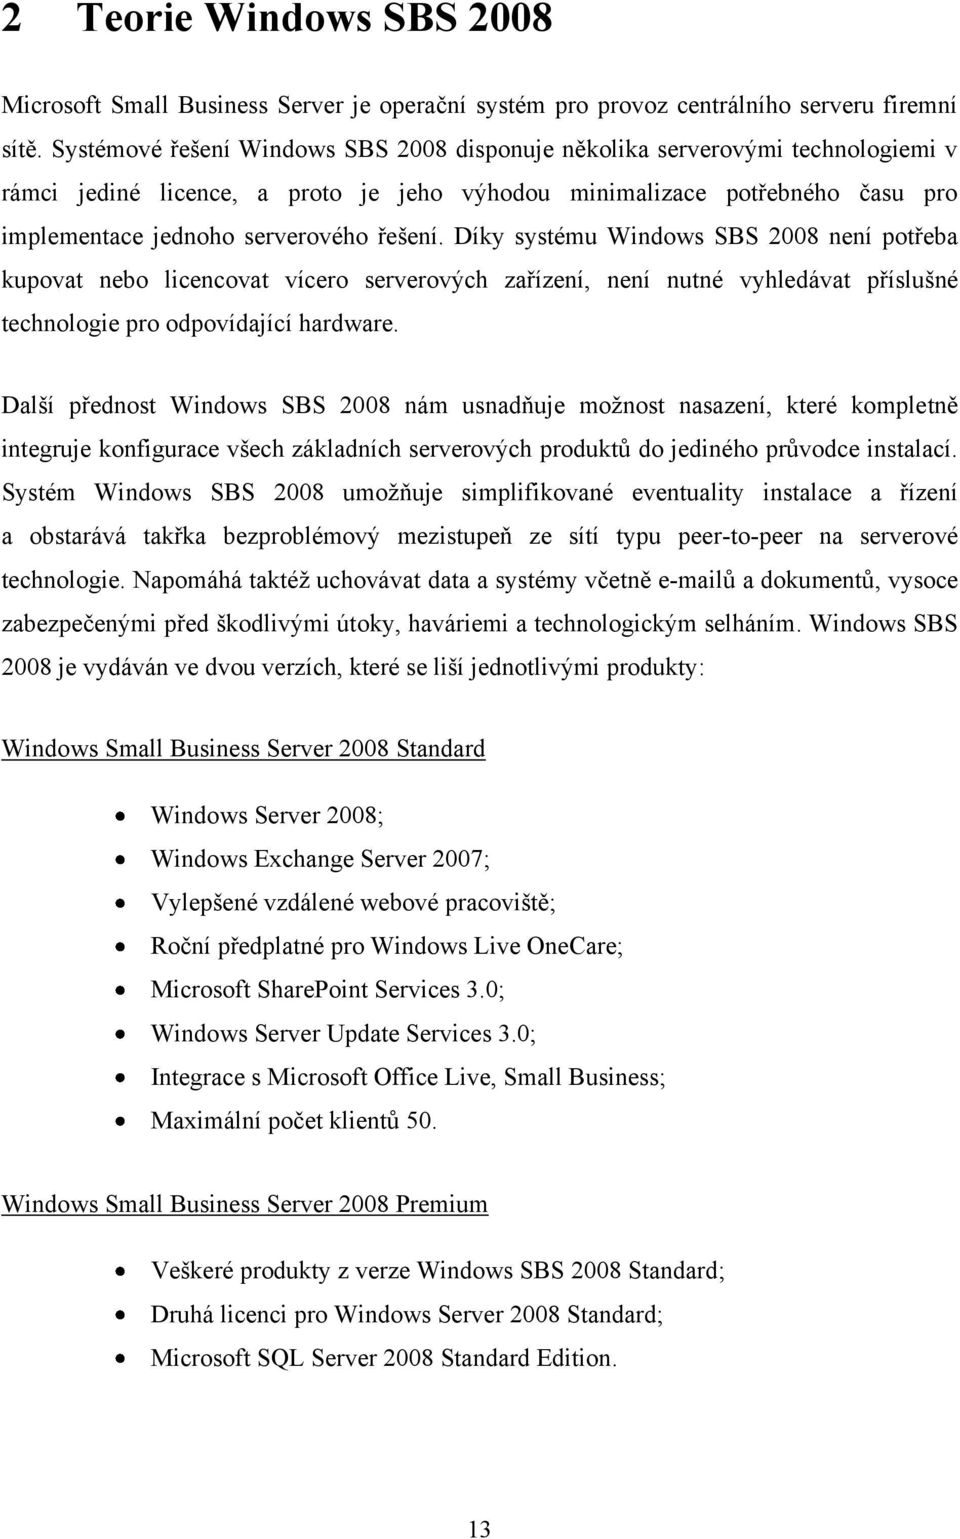 Díky systému Windows SBS 2008 není potřeba kupovat nebo licencovat vícero serverových zařízení, není nutné vyhledávat příslušné technologie pro odpovídající hardware.